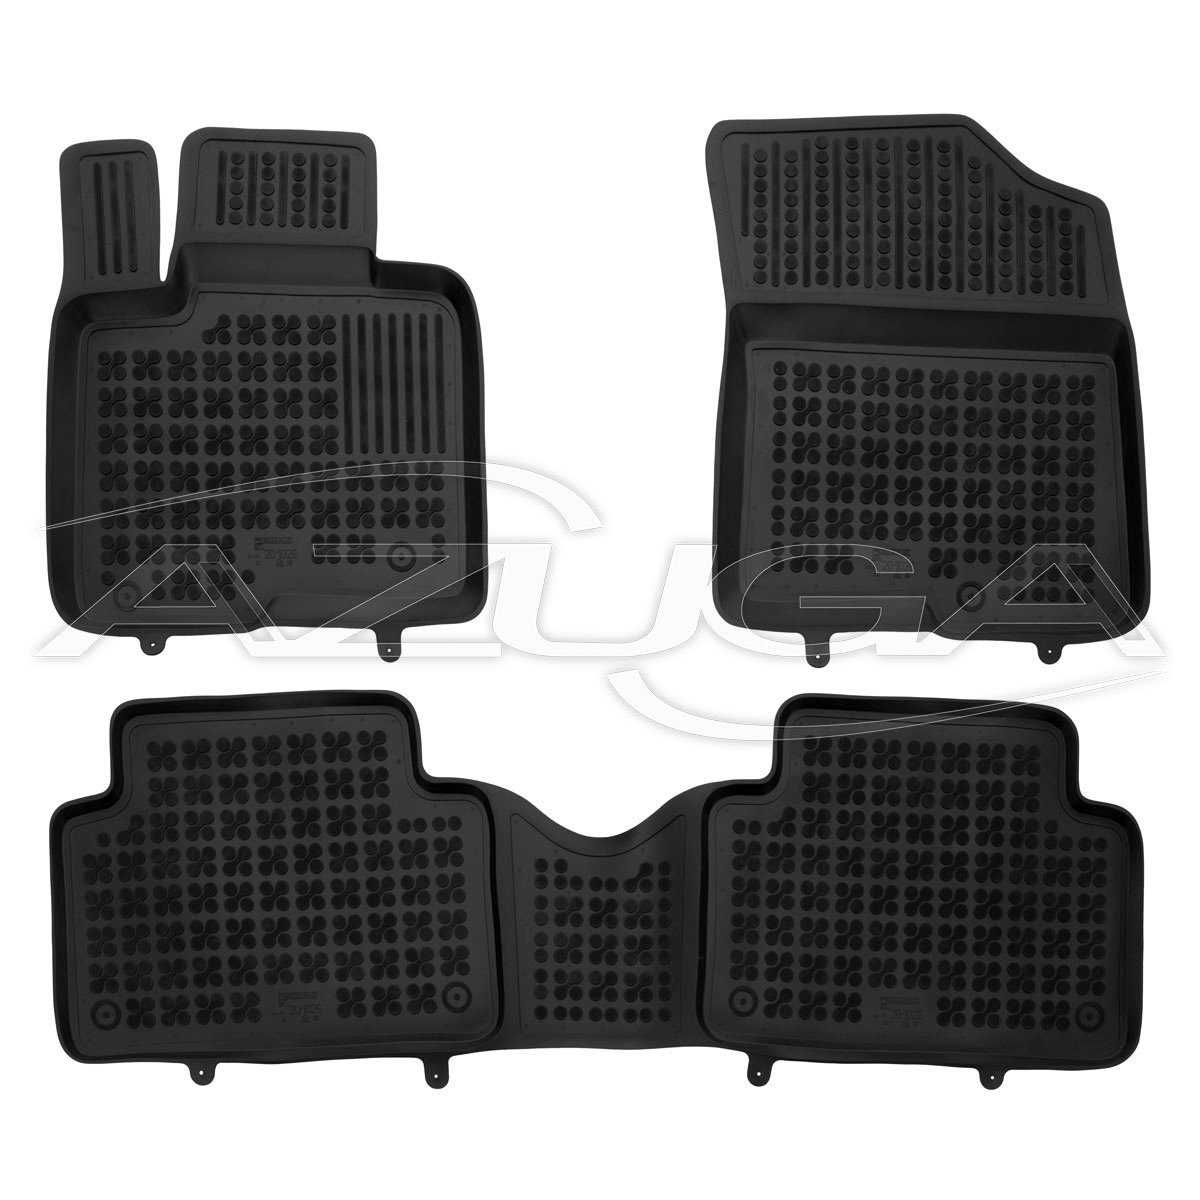 AZUGA Auto-Fußmatten Hohe Gummi-Fußmatten passend für Kia Sorento Hybrid für IV 3-tl, Kia SUV 10/2020 Sorento ab